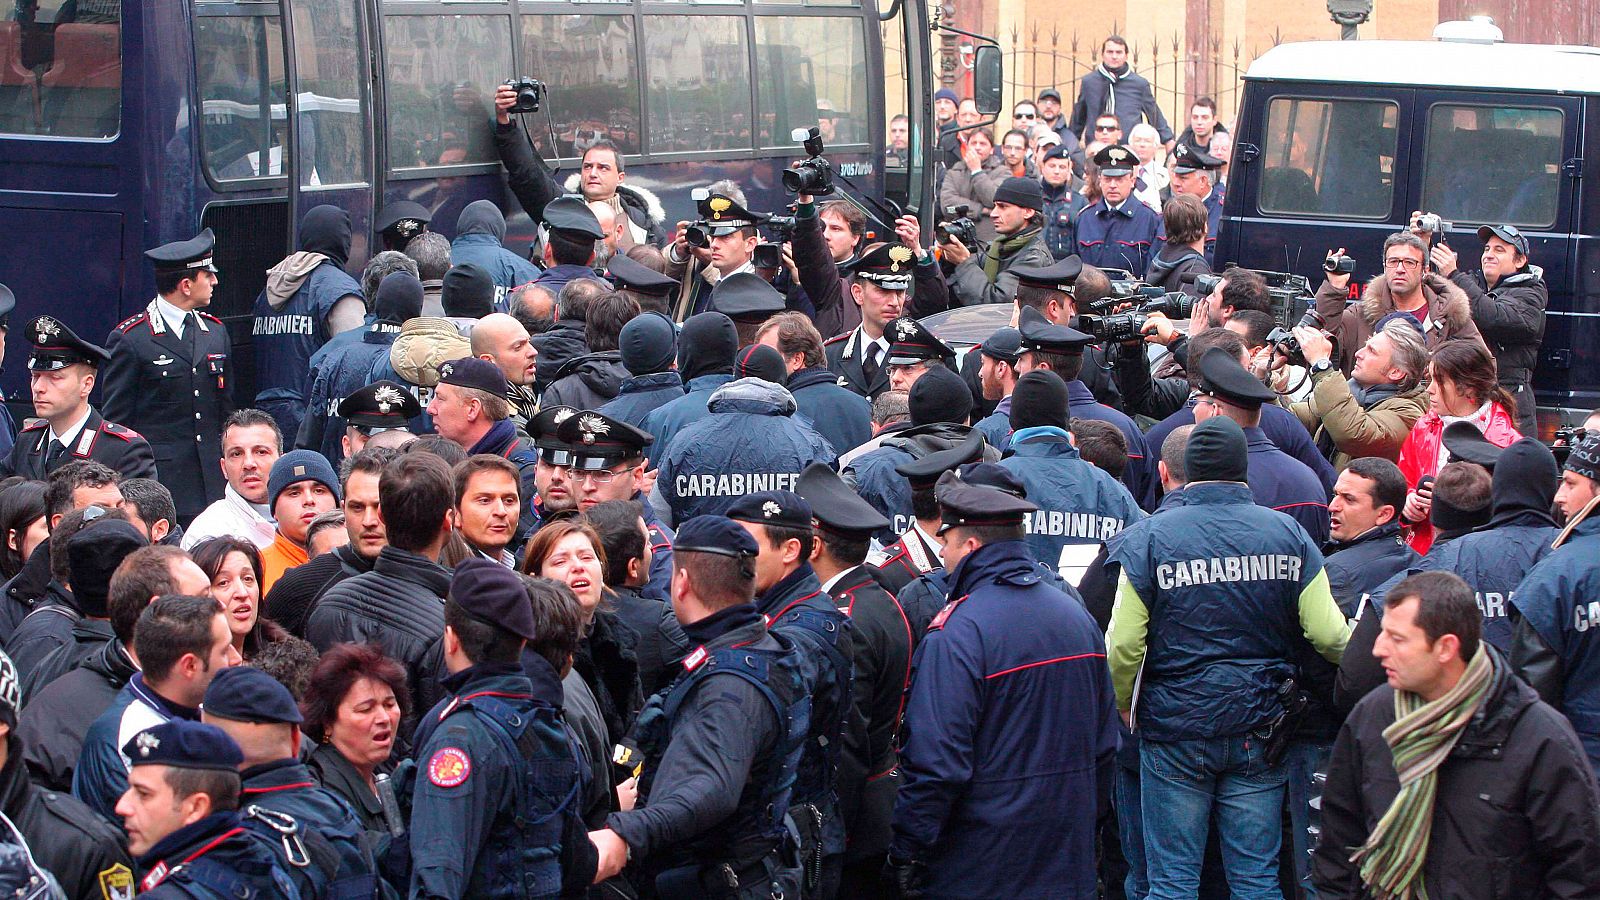 Operación de los carabineros italianos contra la Cosa Nostra siciliana en Palermo (Italia) en una imagen de archivo.